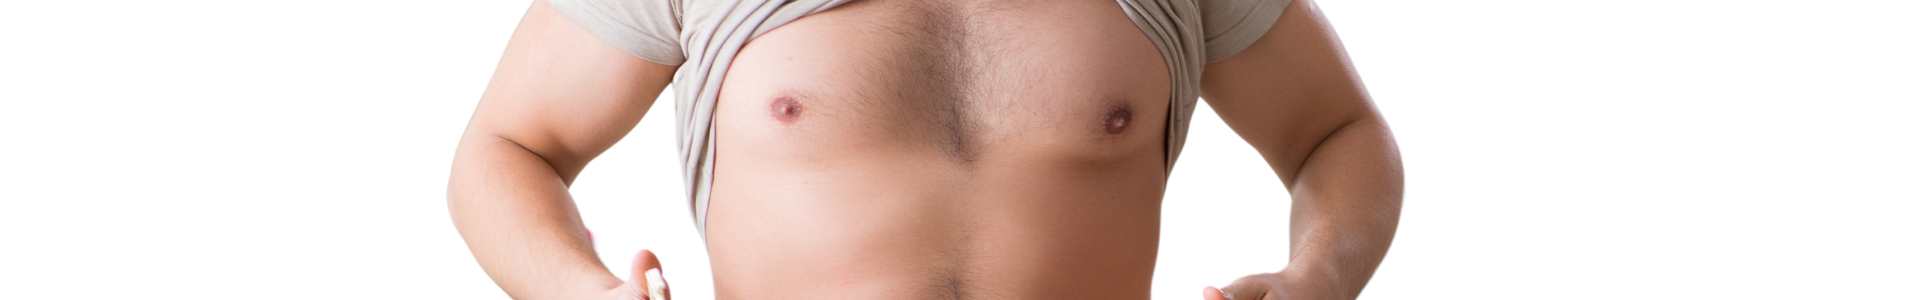 reducir grasa pectoral hombre sin cirugía en la clínica de medicina estética de la Dra Elena Berezo